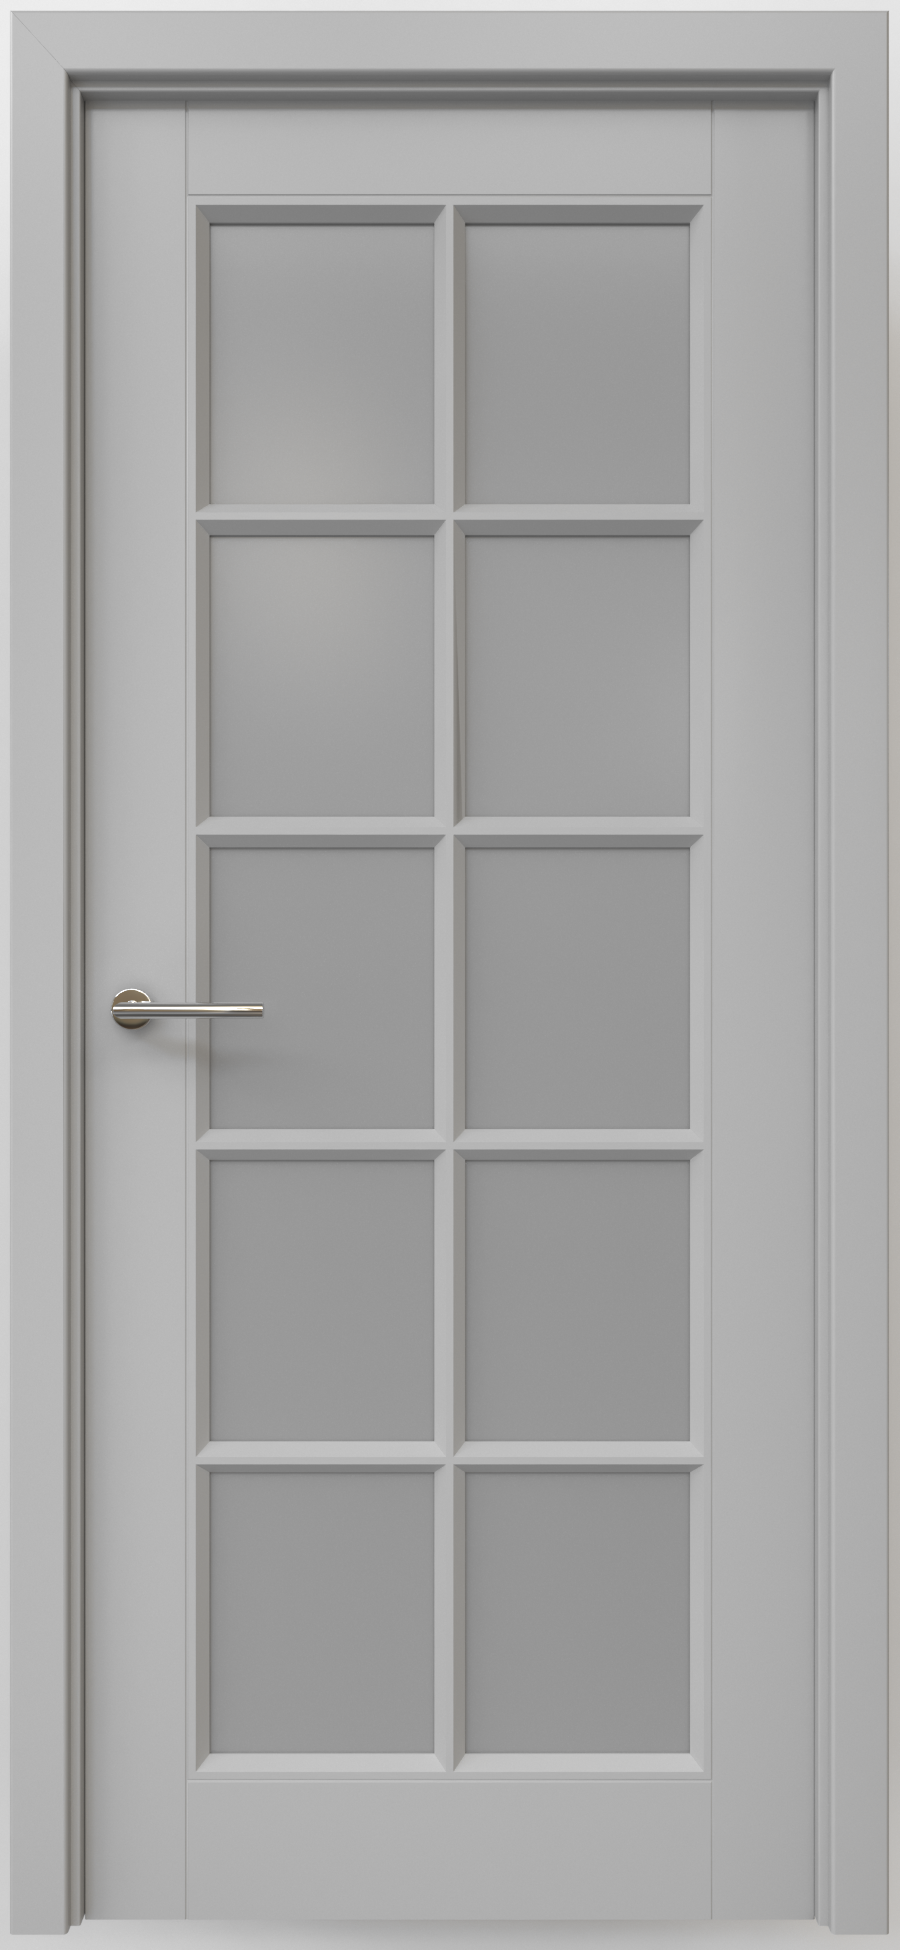 Полотно дверное остекленное Эмаль Классика-5 ЛЕВОЕ 900 серый стекло мателюкс (защелка маг.)